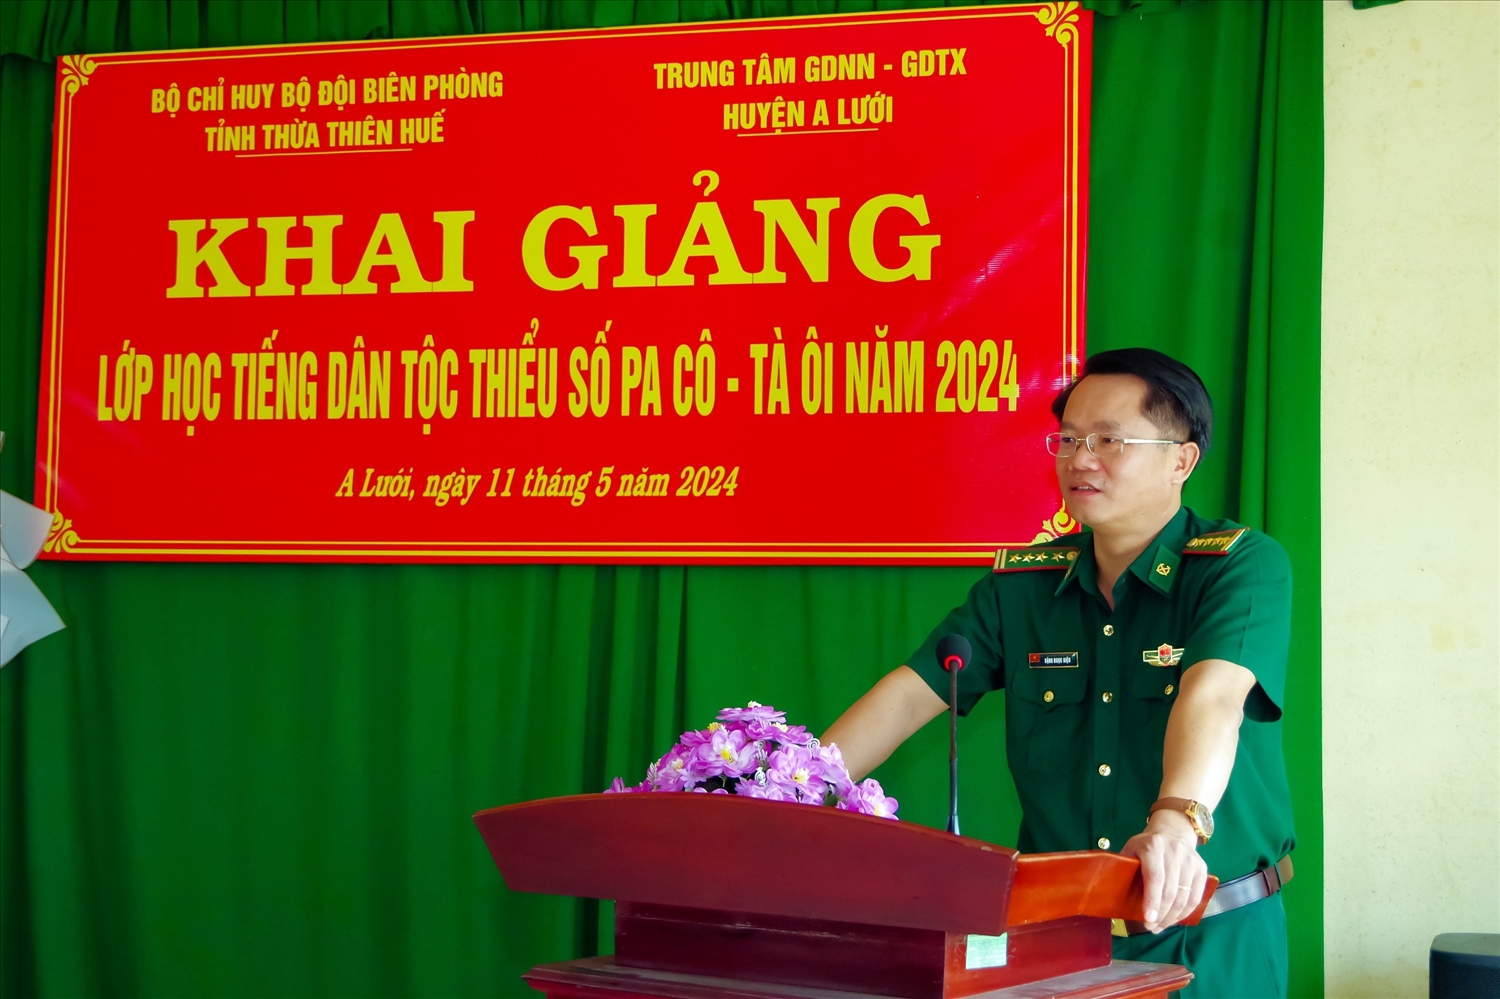 Đại tá Đặng Ngọc Hiệu, Phó Chính uỷ BĐBP tỉnh phát biểu chỉ đạo tại buổi khai giảng